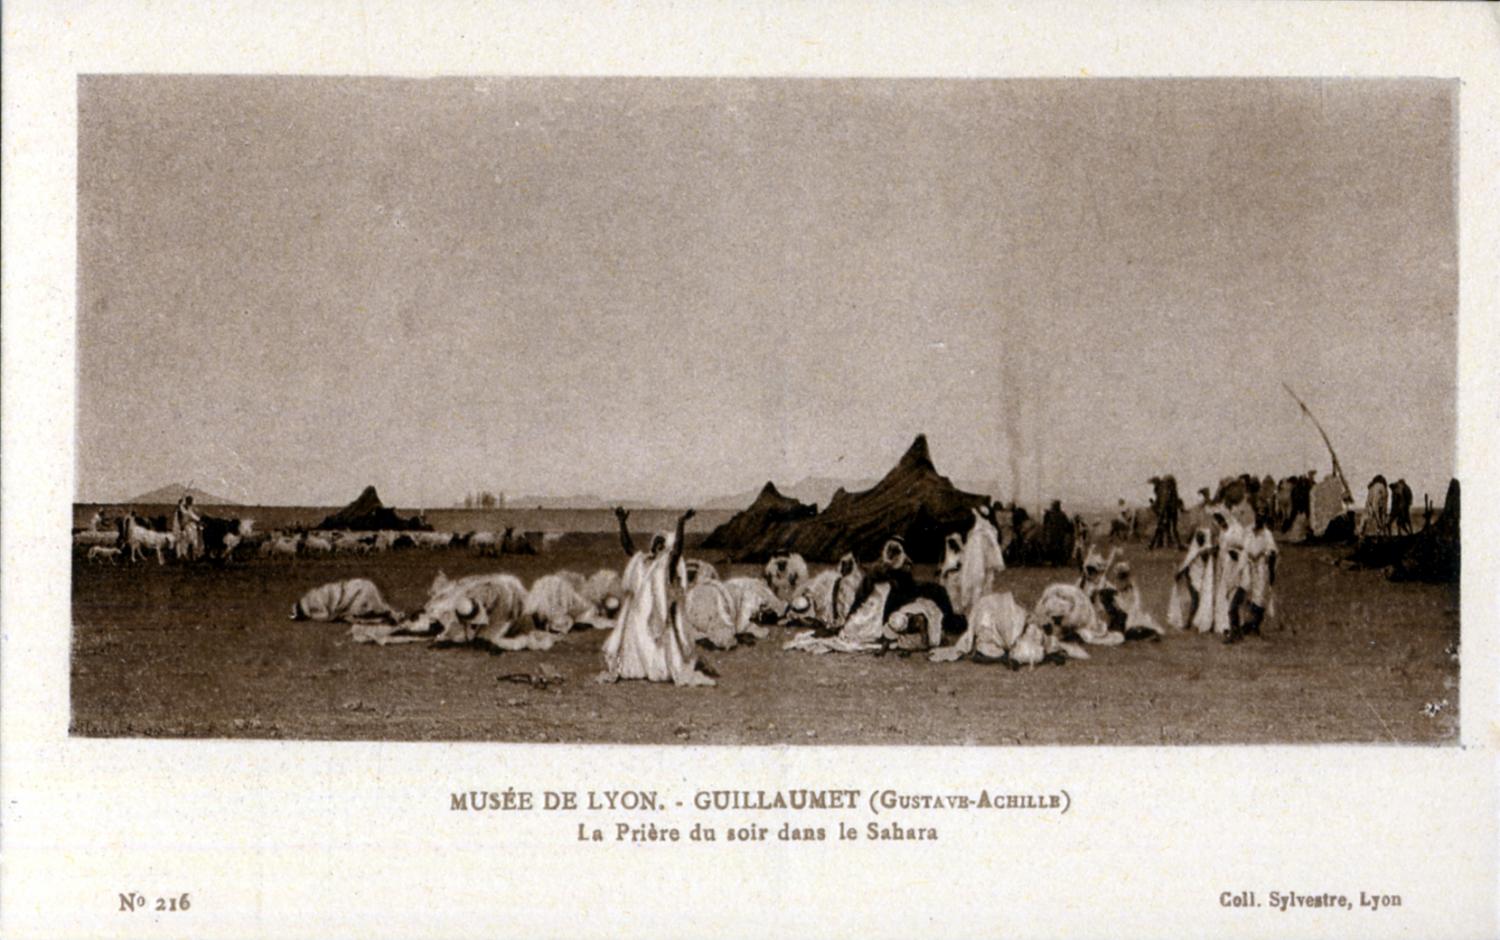 Musée de Lyon : Guillaumet, Gustave-Achille ; La Prière du soir dans le Sahara.